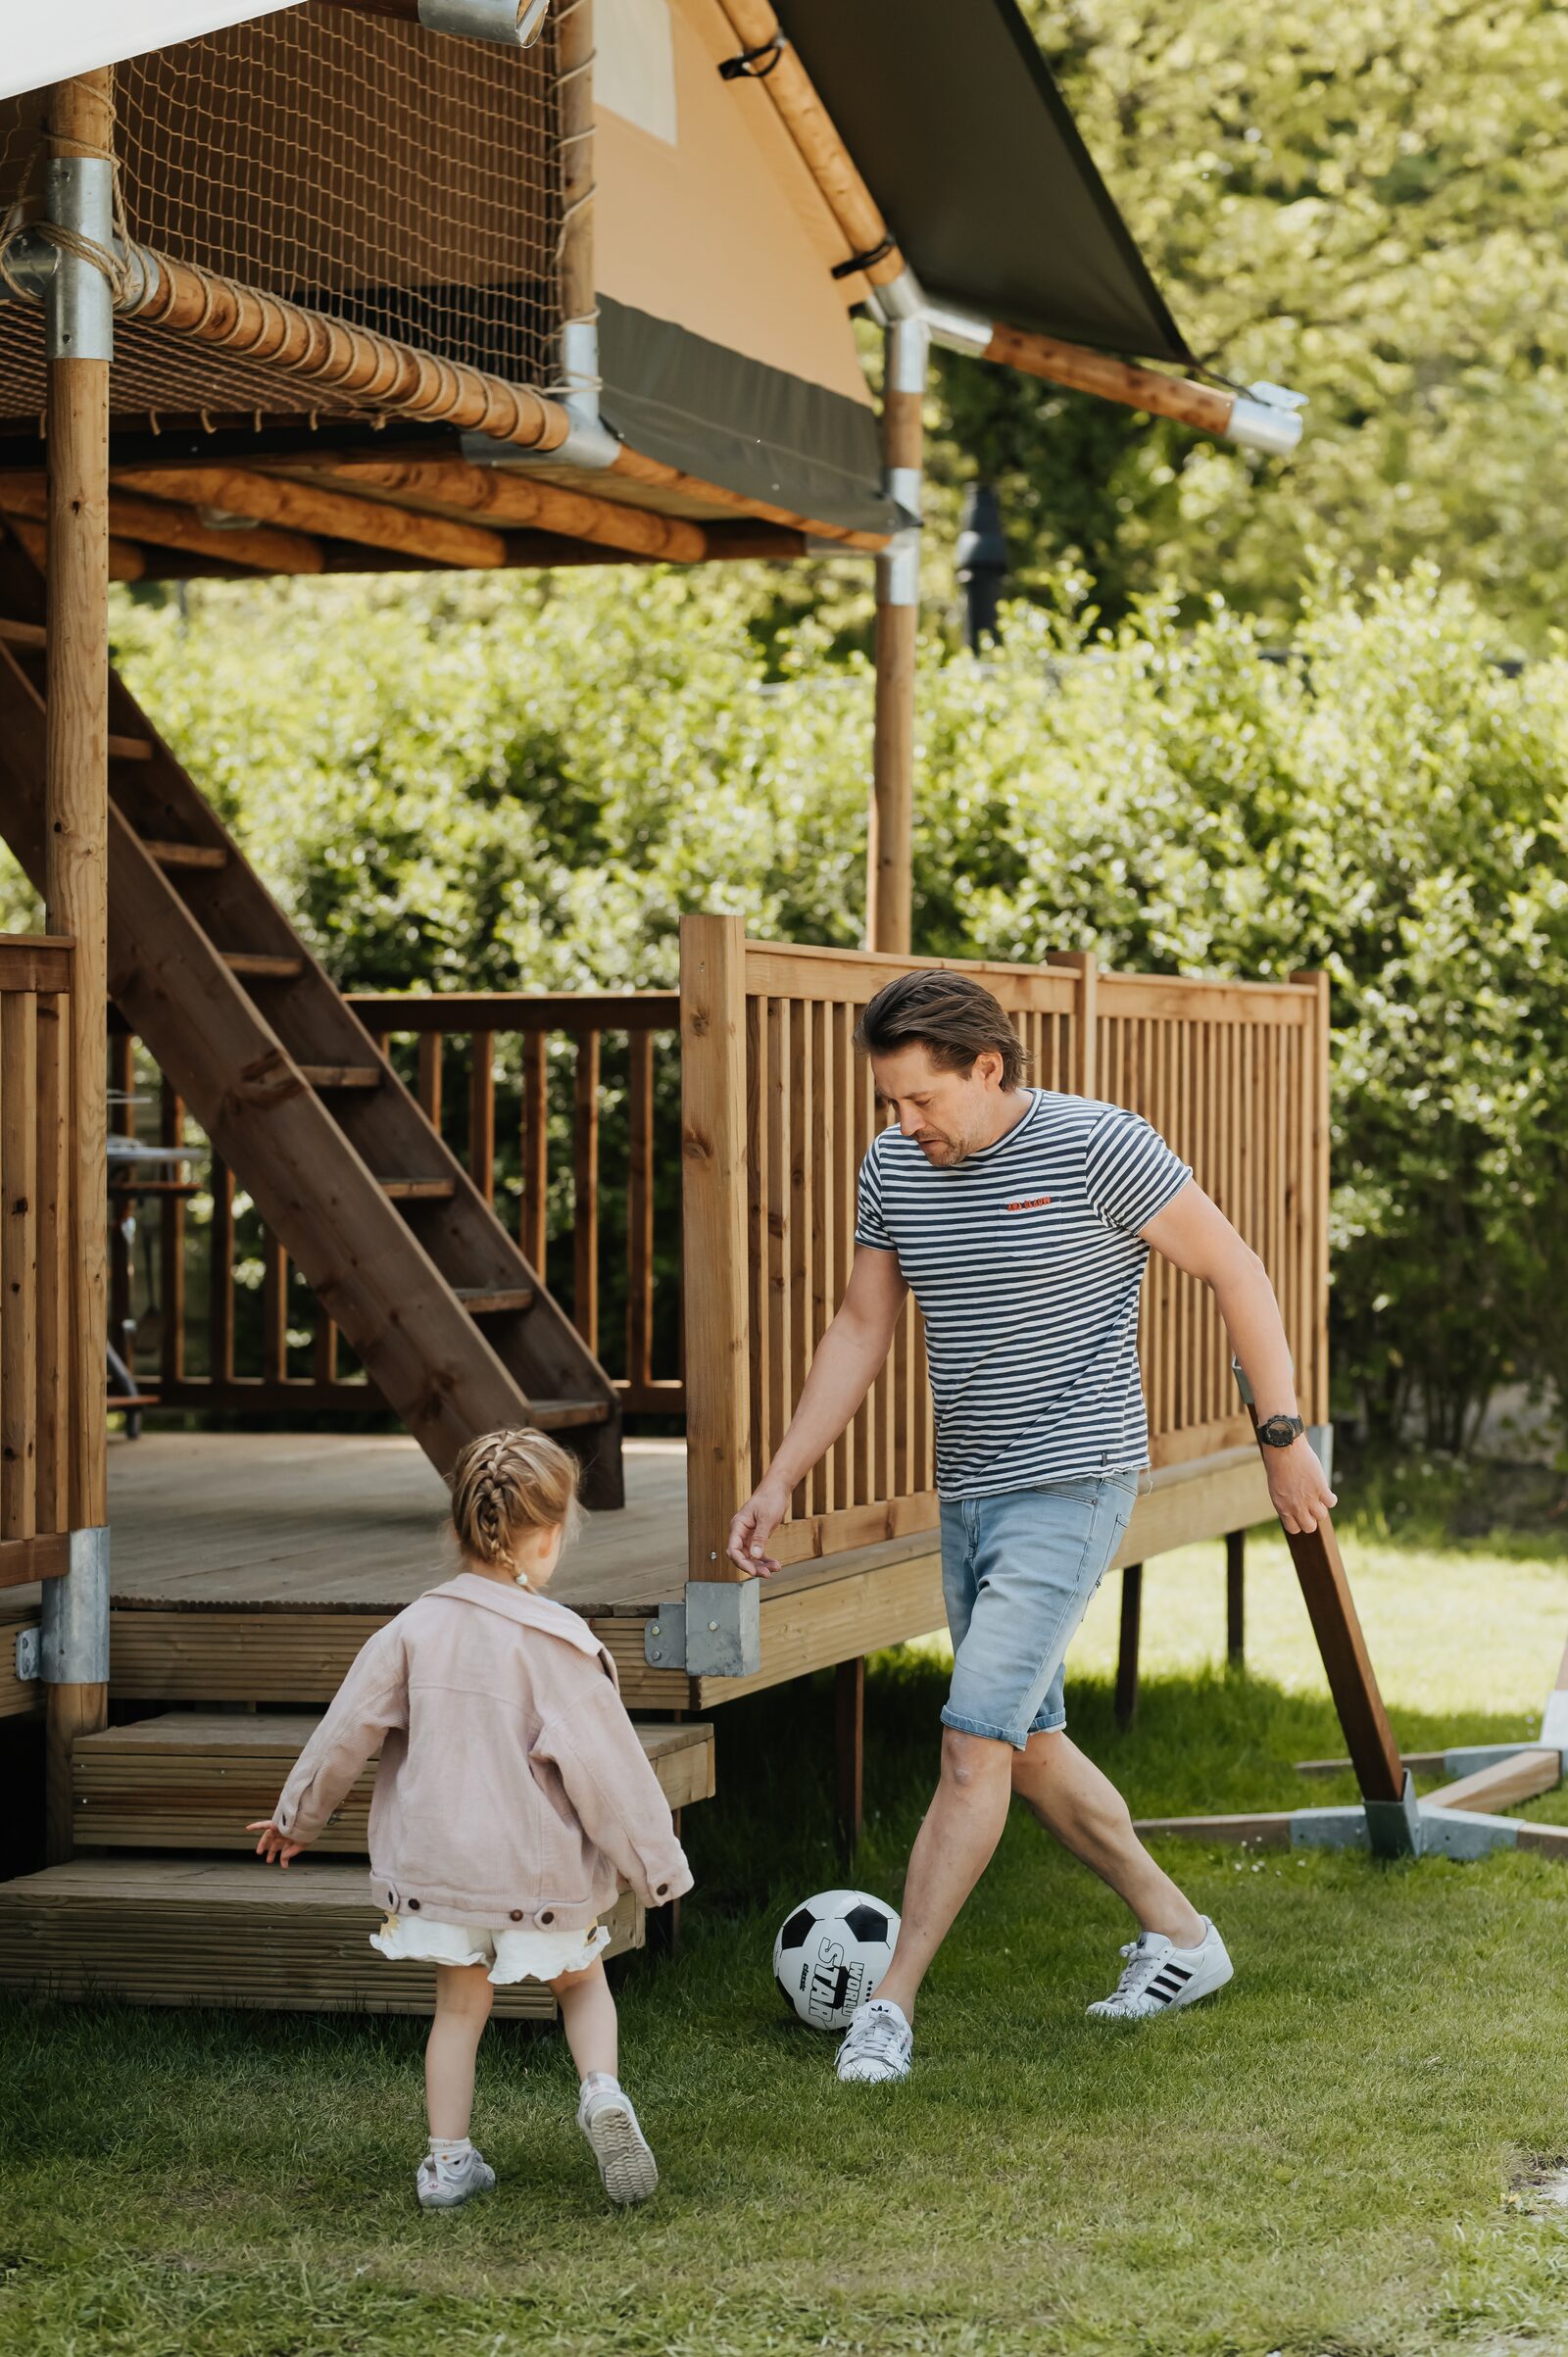 Urlauber Ferri beim Fußballspielen mit seiner Tochter vor dem Safarizelt 